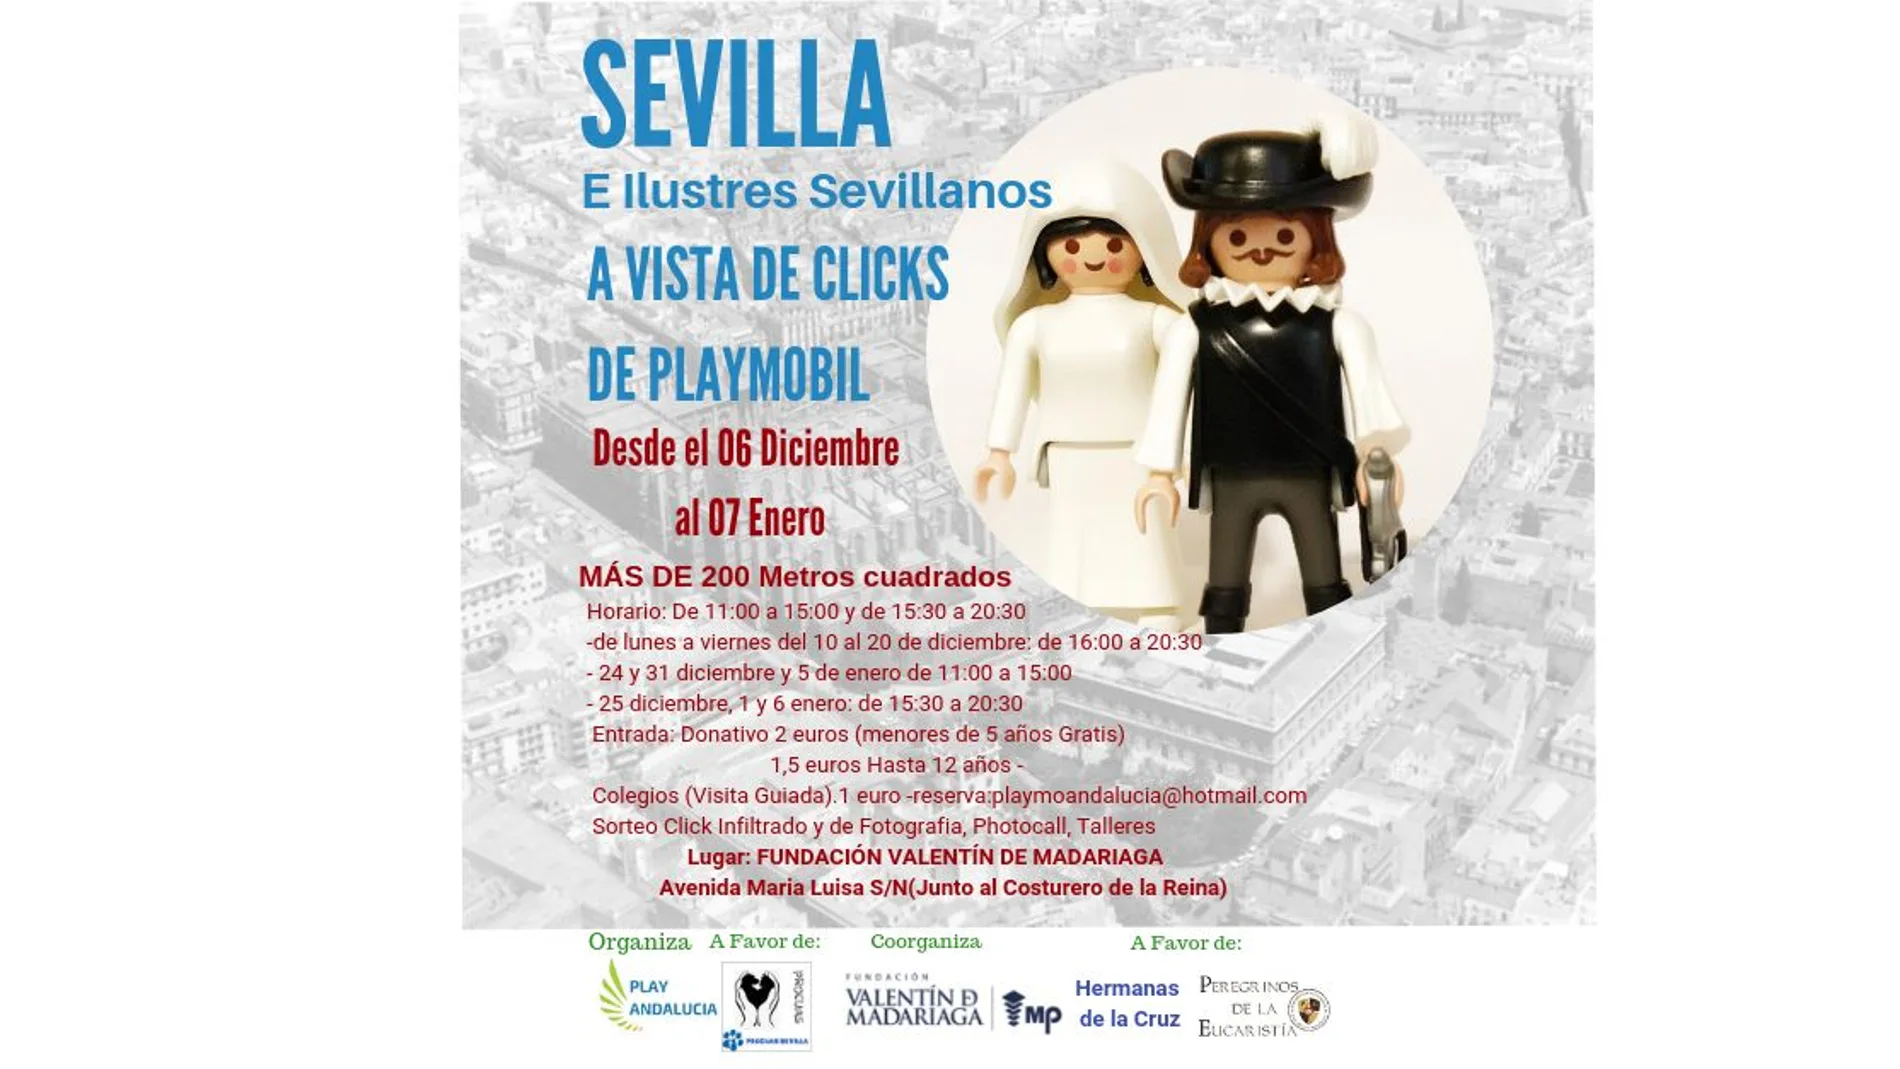 La historia de Sevilla, de la mano de clicks de Playmobil